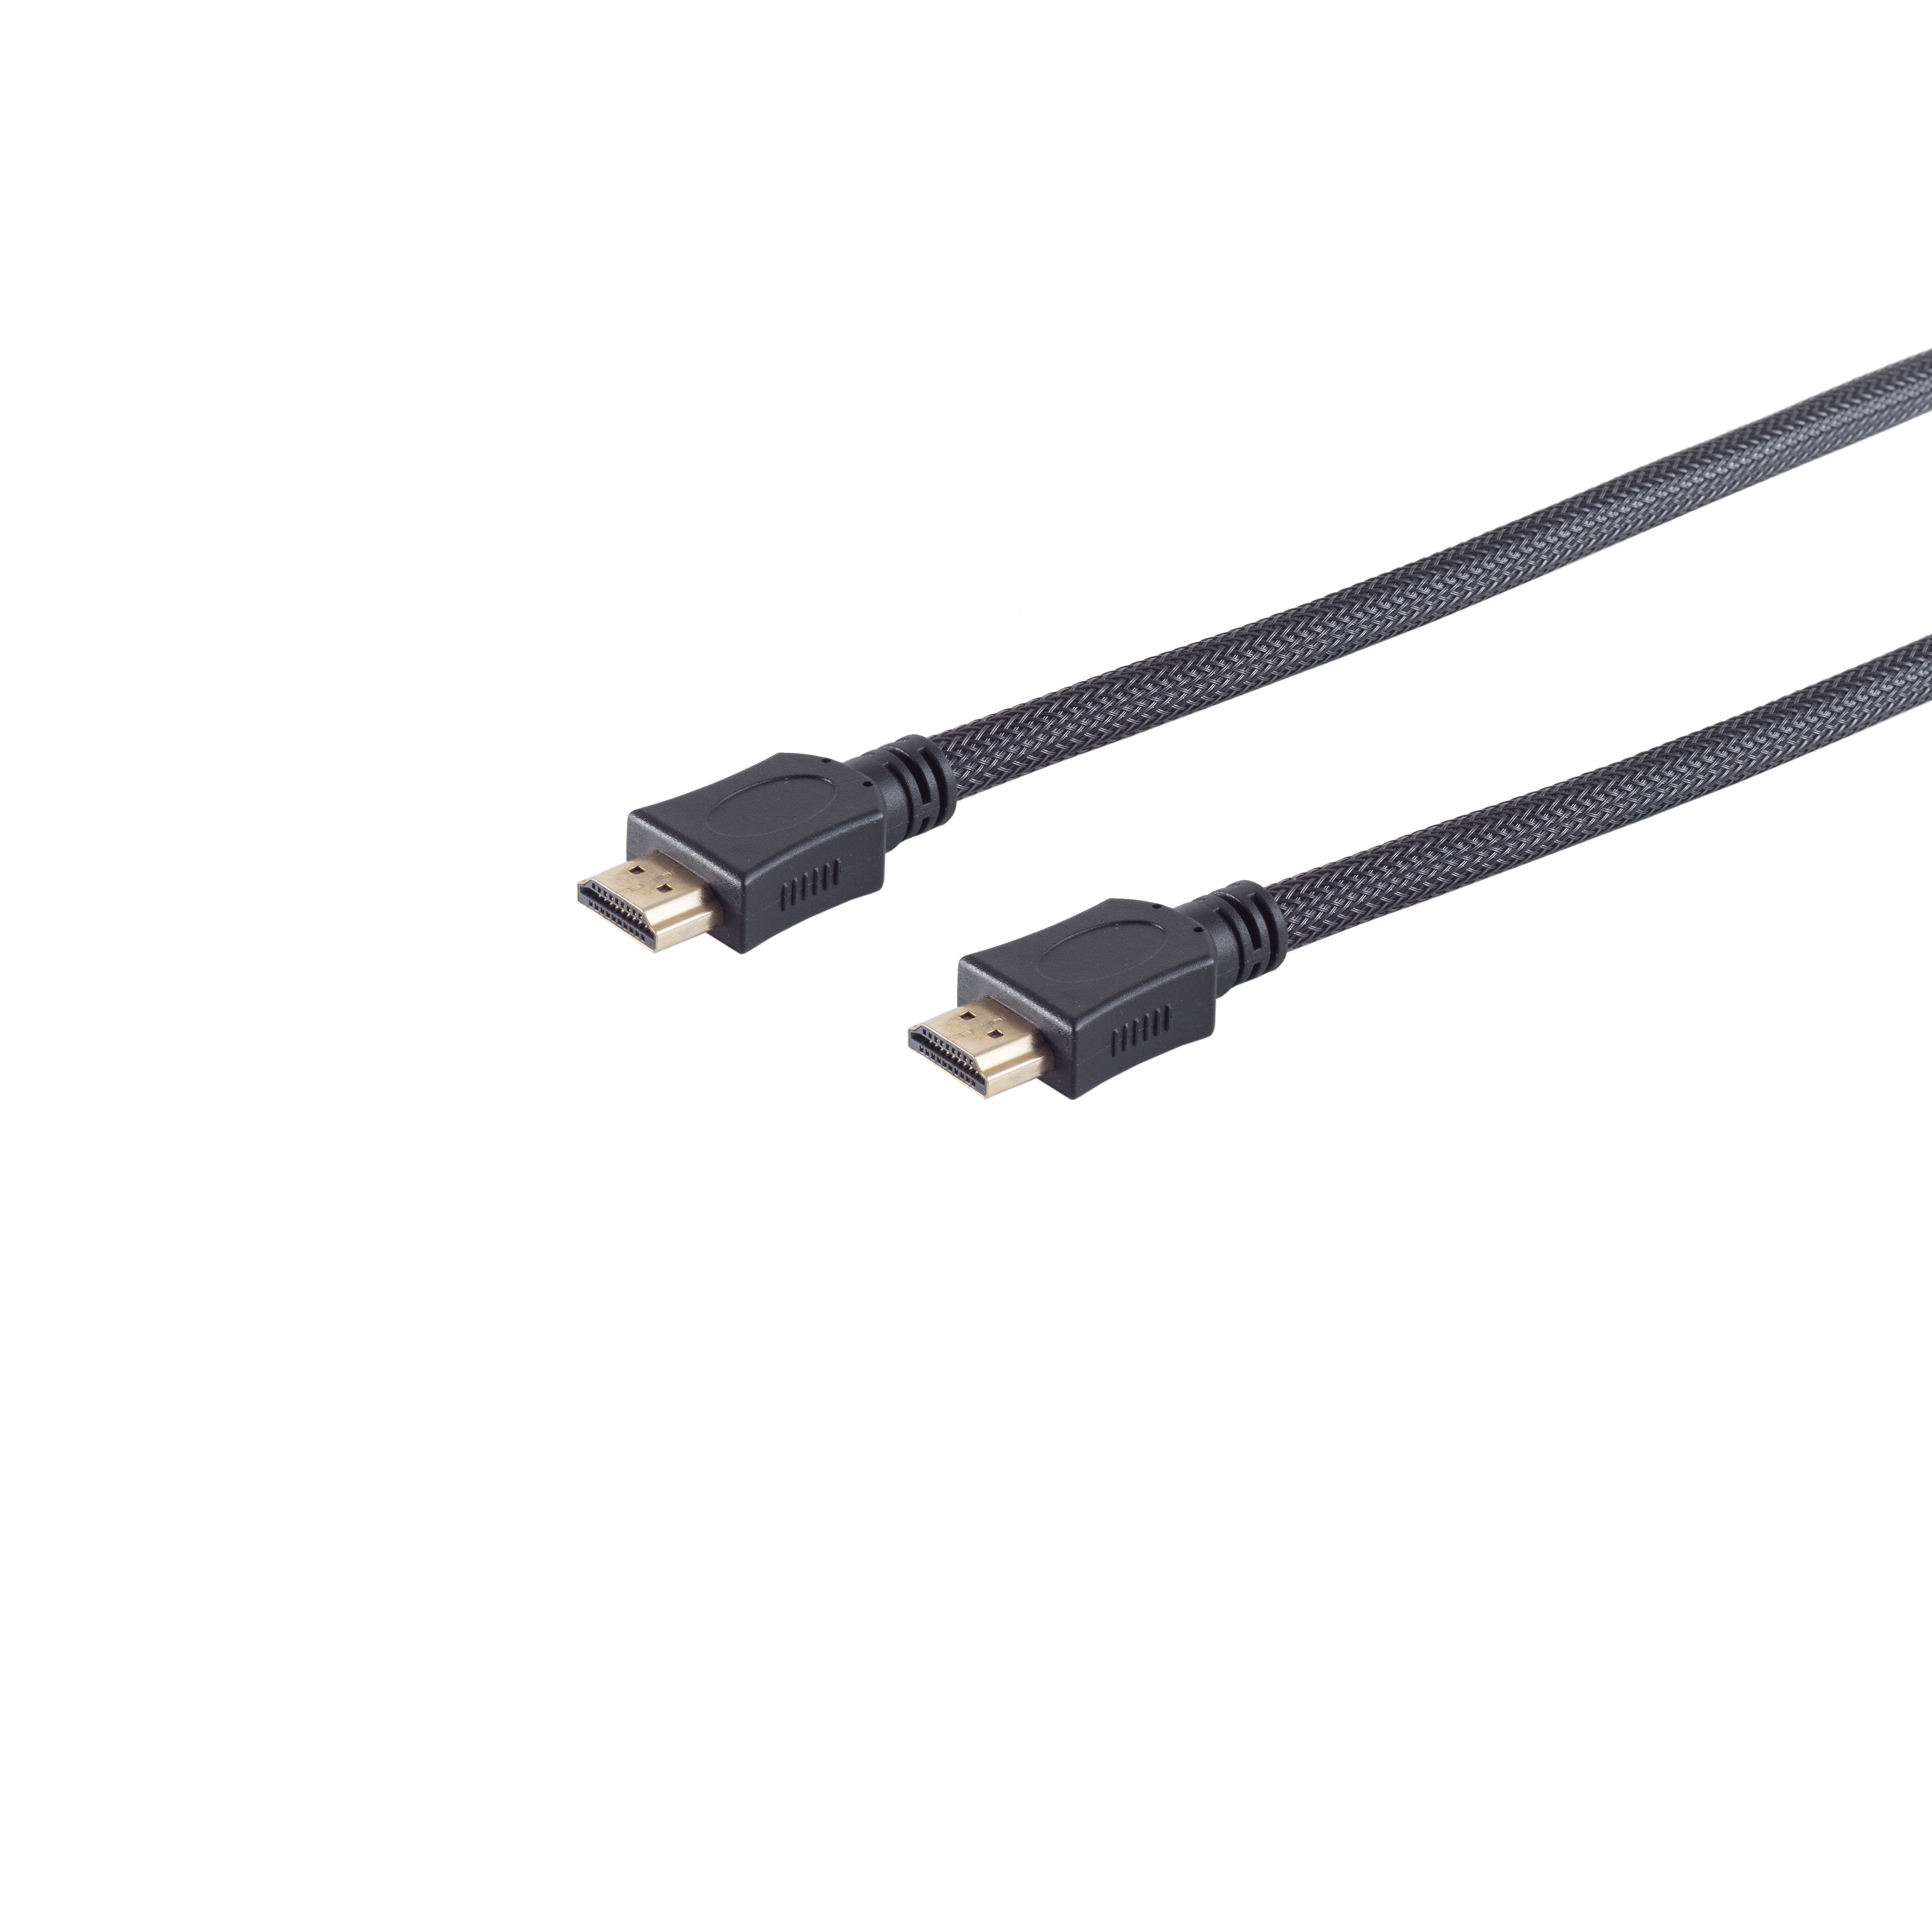 S/CONN MAXIMUM sw A-St./HDMI HEAC 5m Nylon A-St. HDMI Kabel CONNECTIVITY verg Mantel HDMI